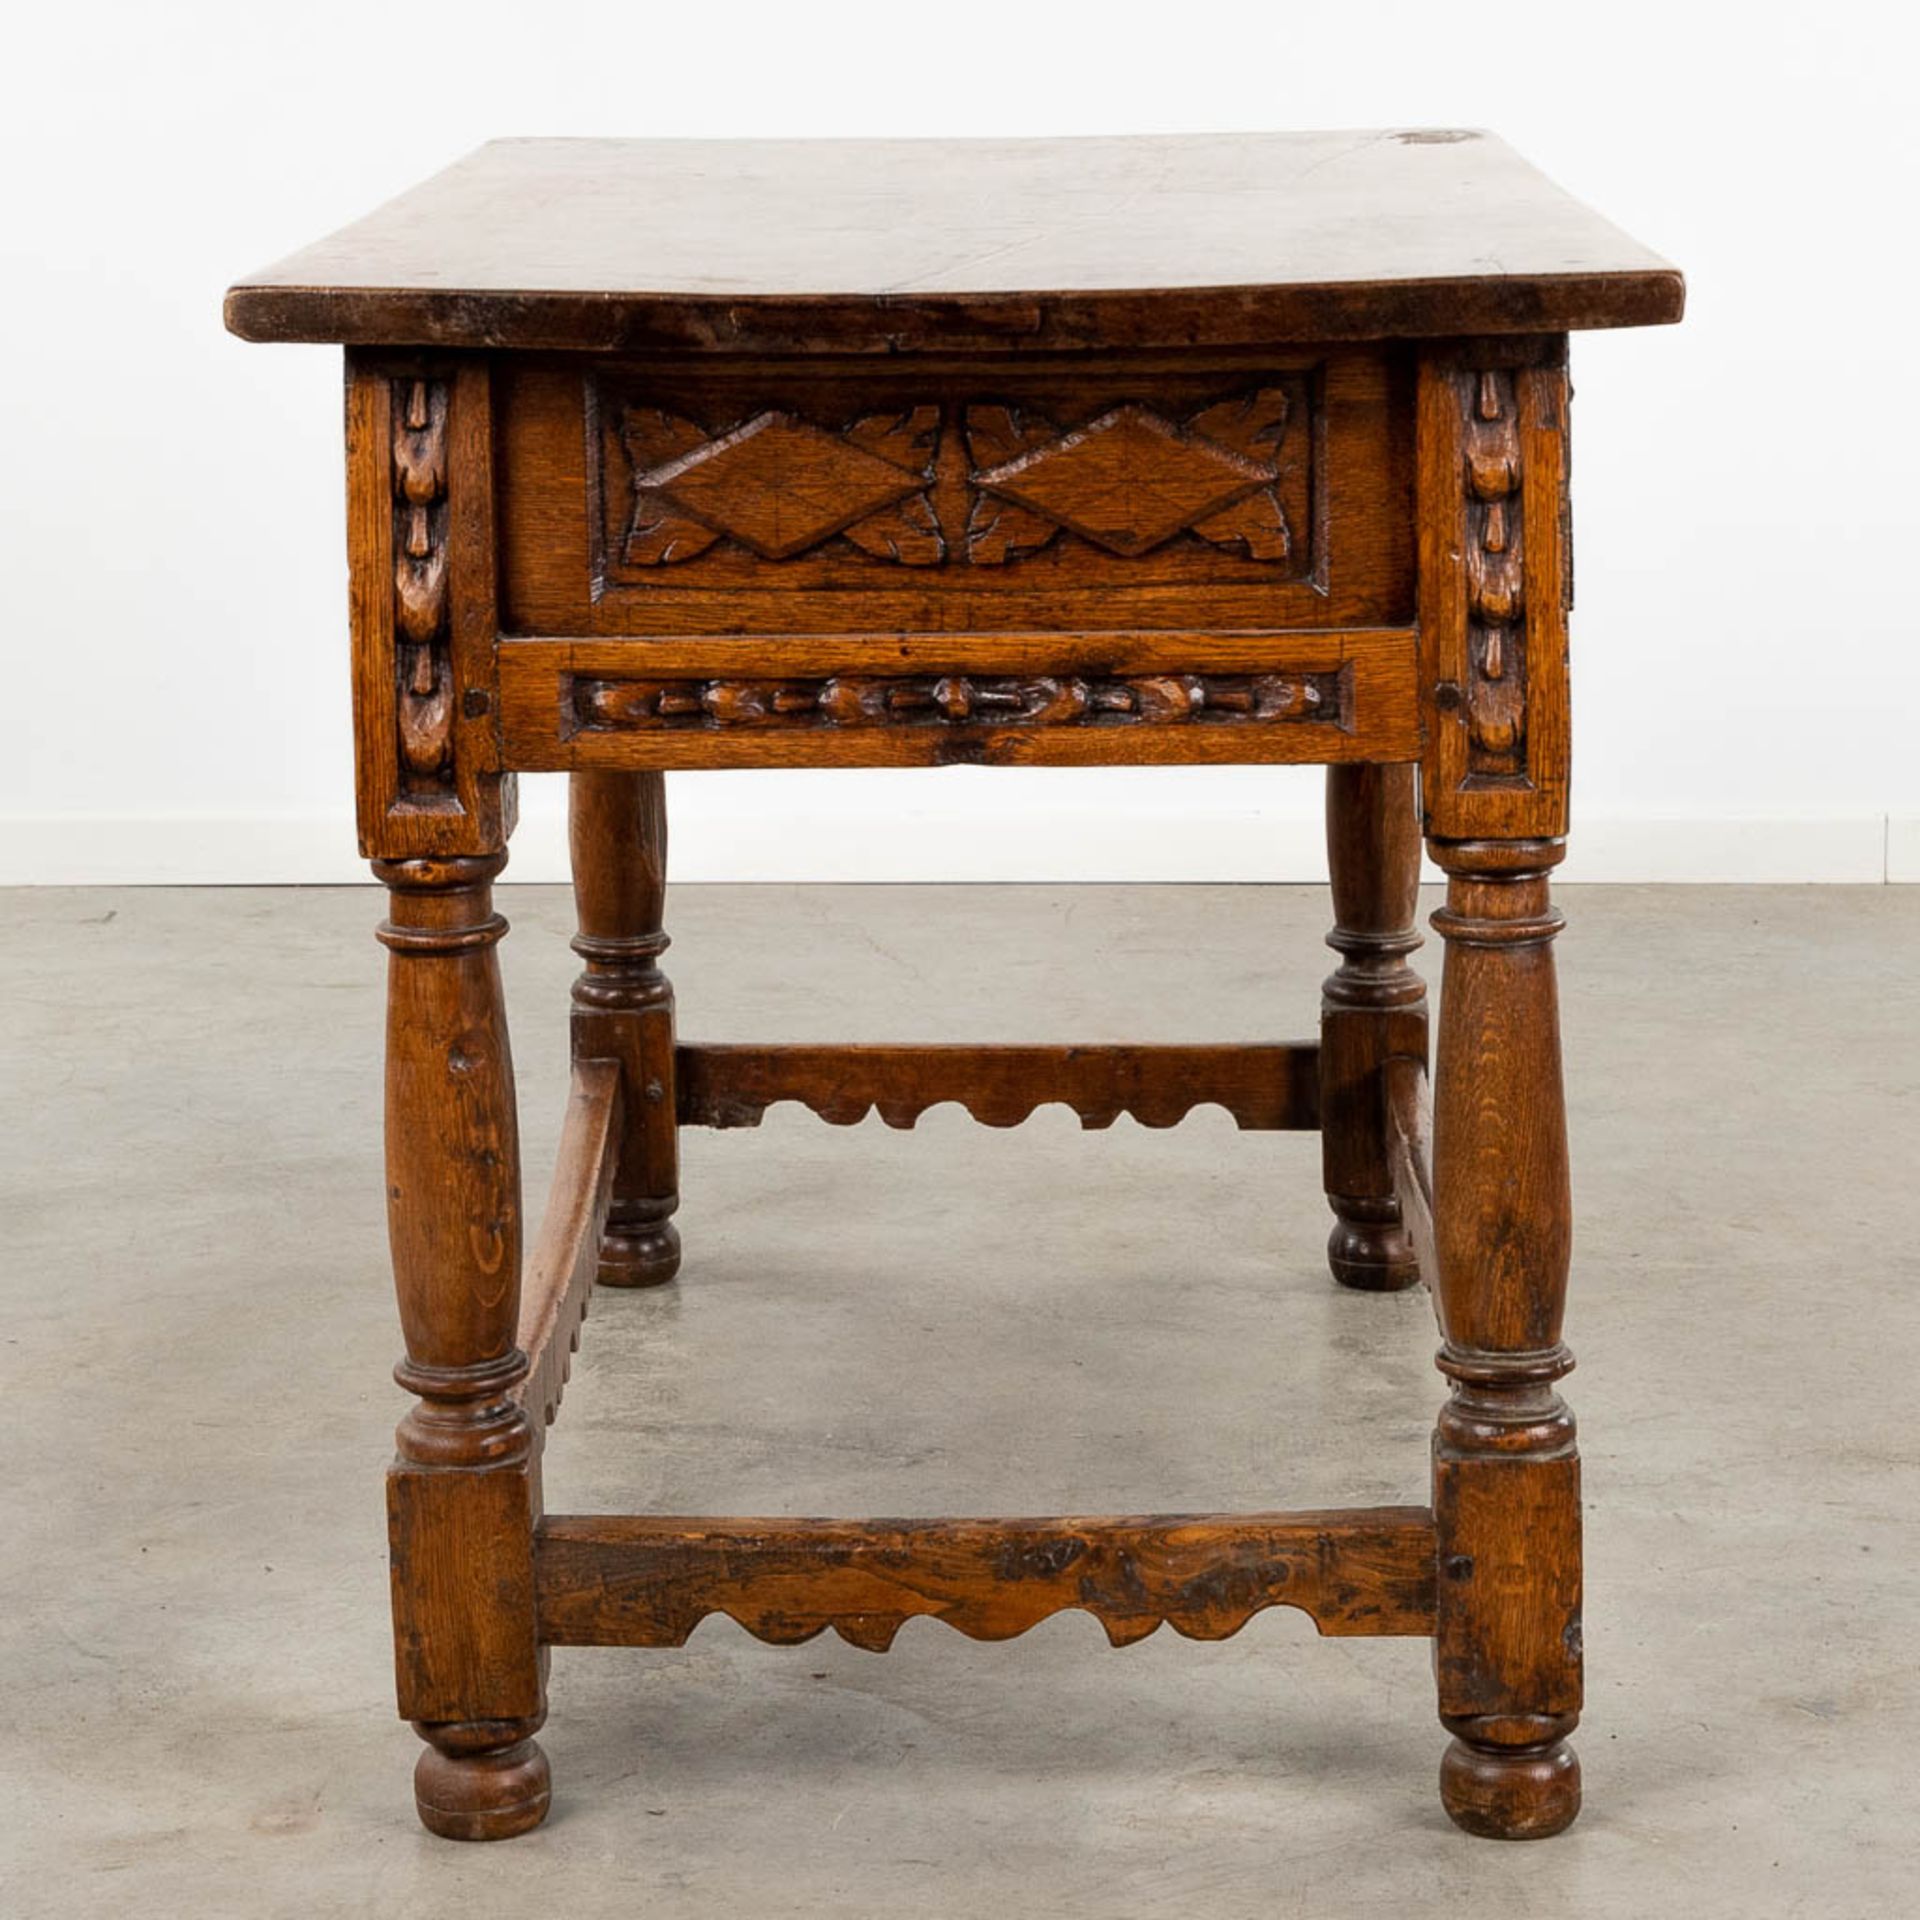 An antique "Table De Milieu", sculptured wood. Spain, 18th C. (D:72 x W:127 x H:82 cm) - Image 5 of 13